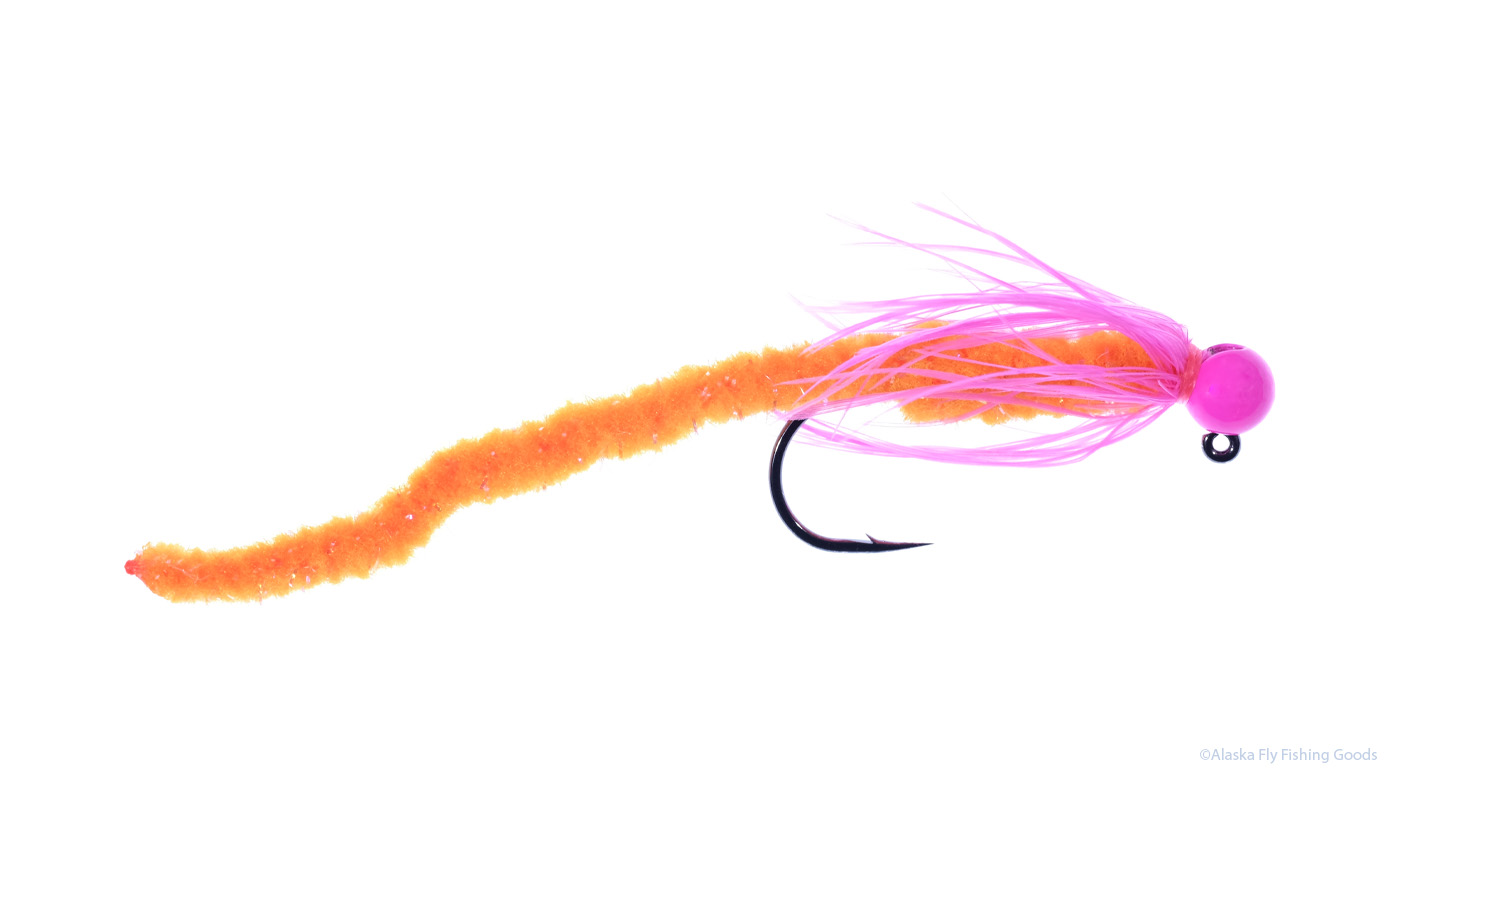 Galaxy Worm #1/0 - BC Steelhead Flies - Alaska Fly Fishing Goods